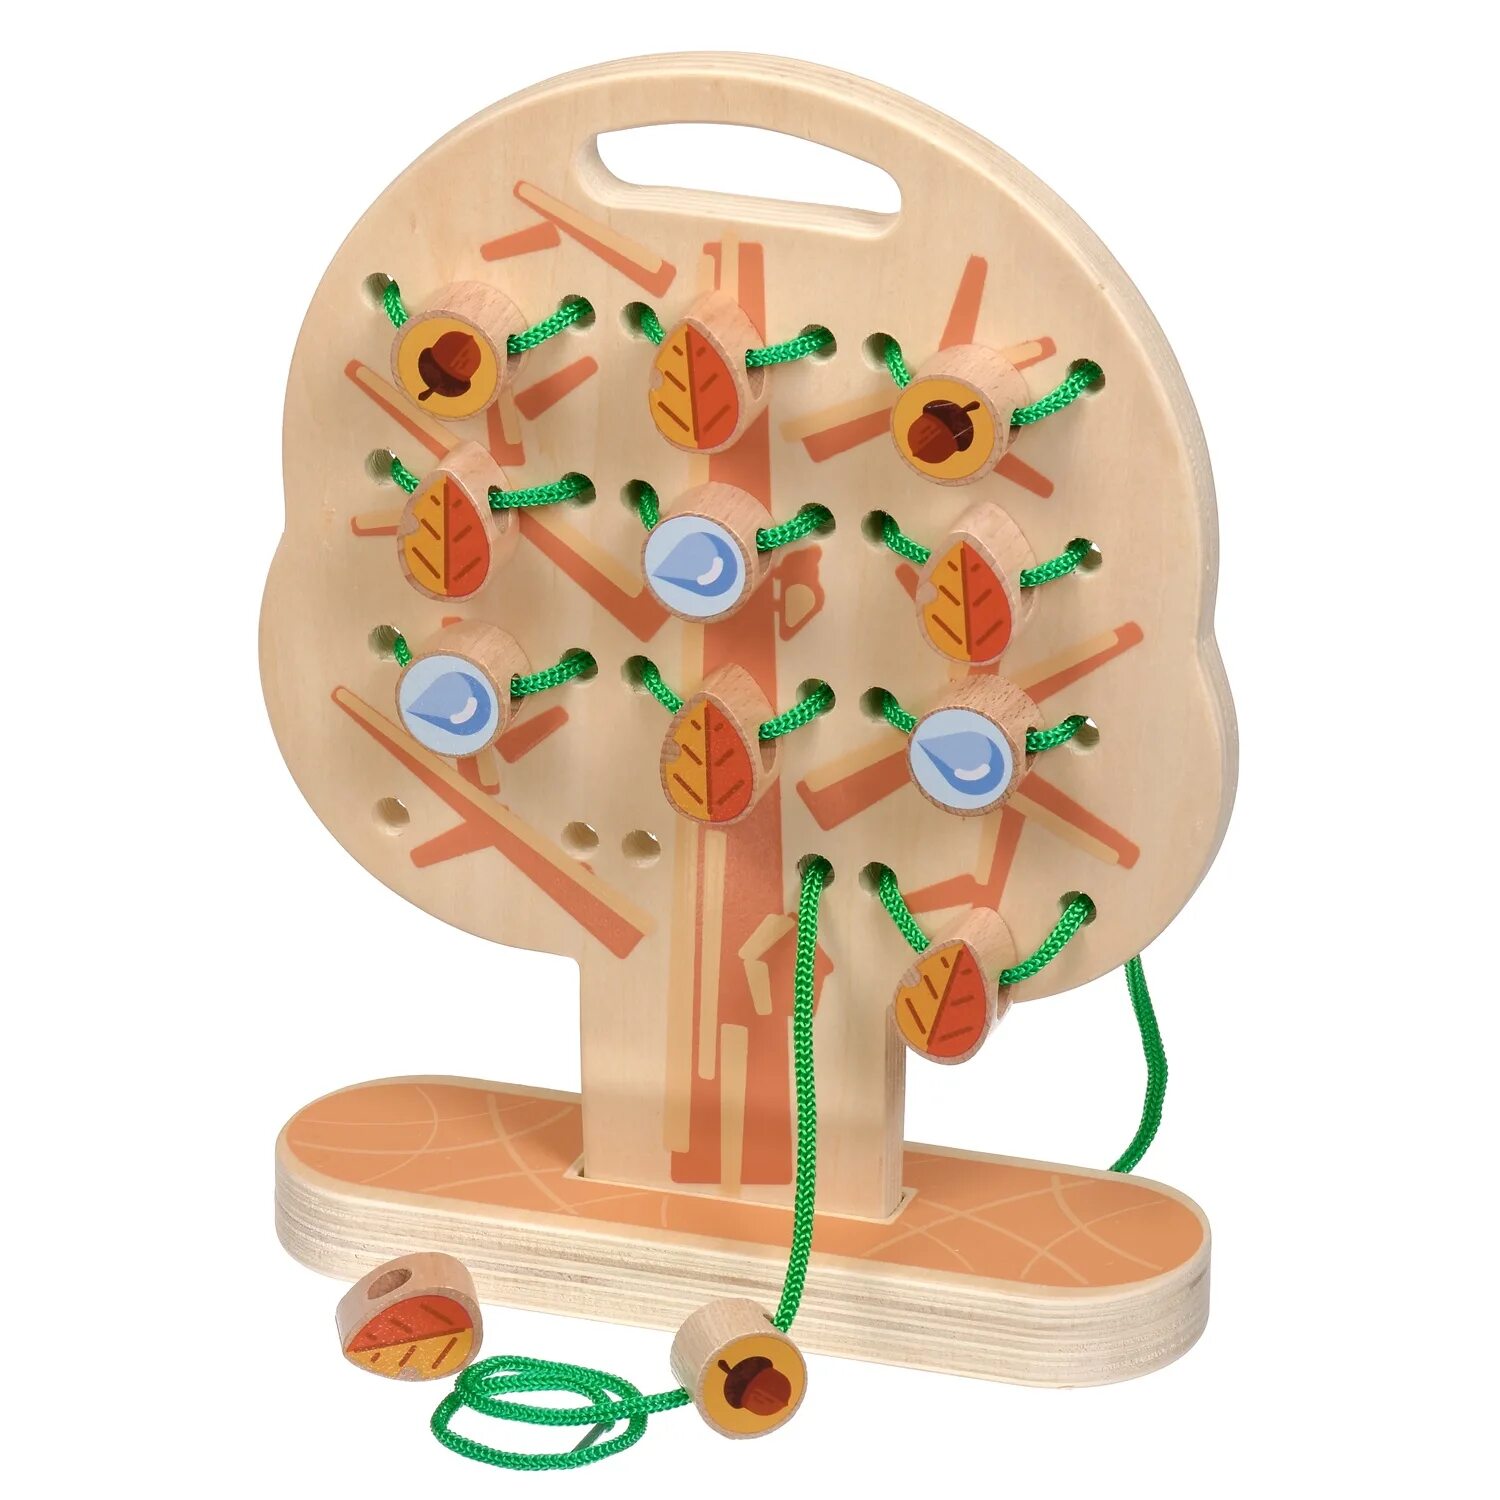 Toy tree. МДИ шнуровка. Деревянные игрушки для детей. Развивающие игрушки из дерева. Игрушка деревянная развивающая.